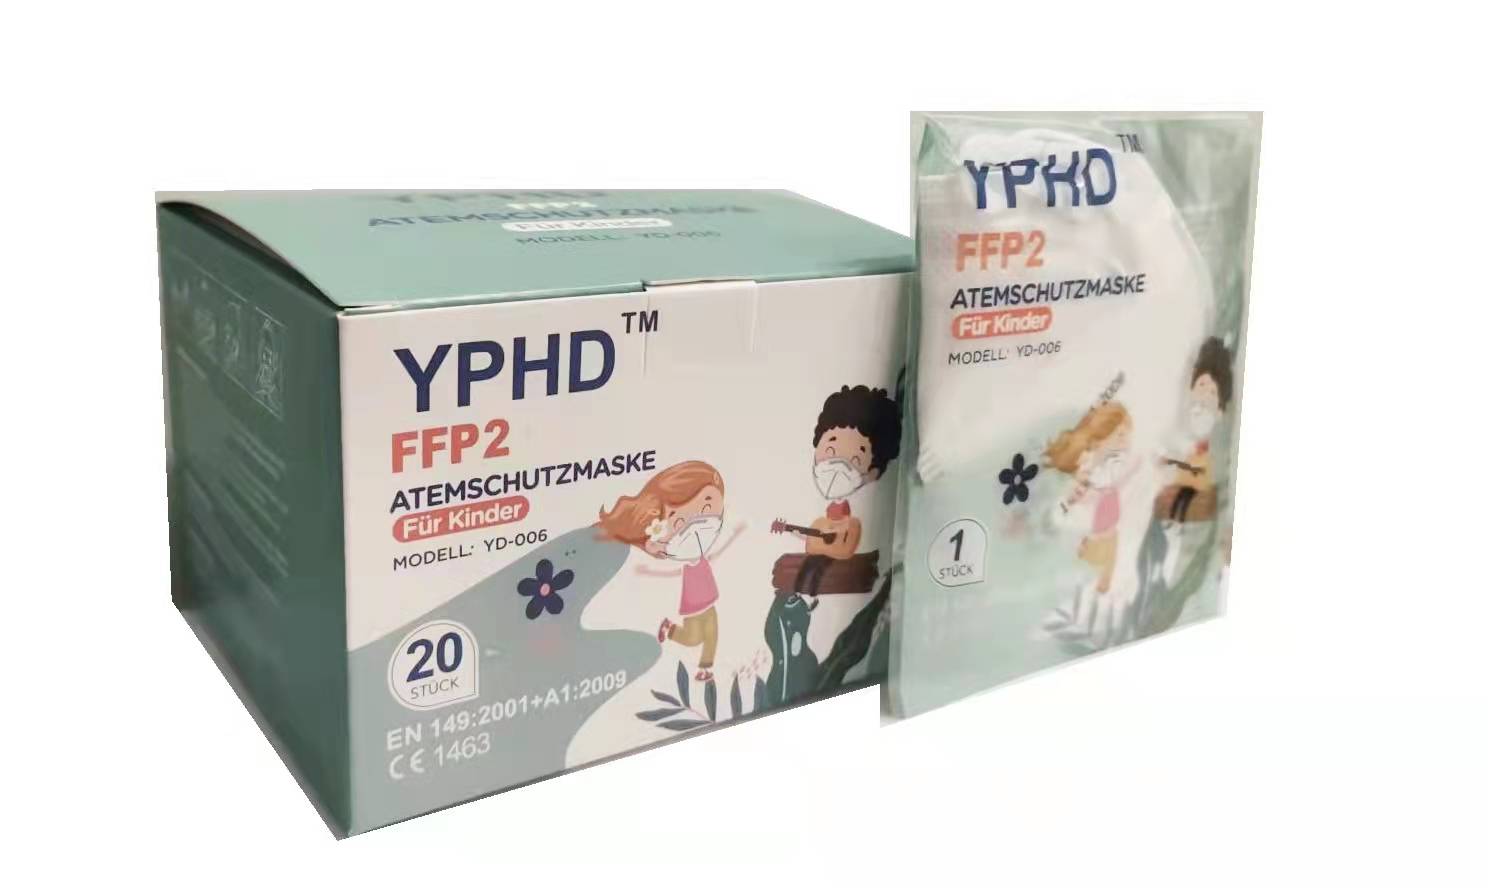 Kinder FFP2 Atemschutzmaske mit CE 1463 600 Stück (30x20er Einzelnverpackung)